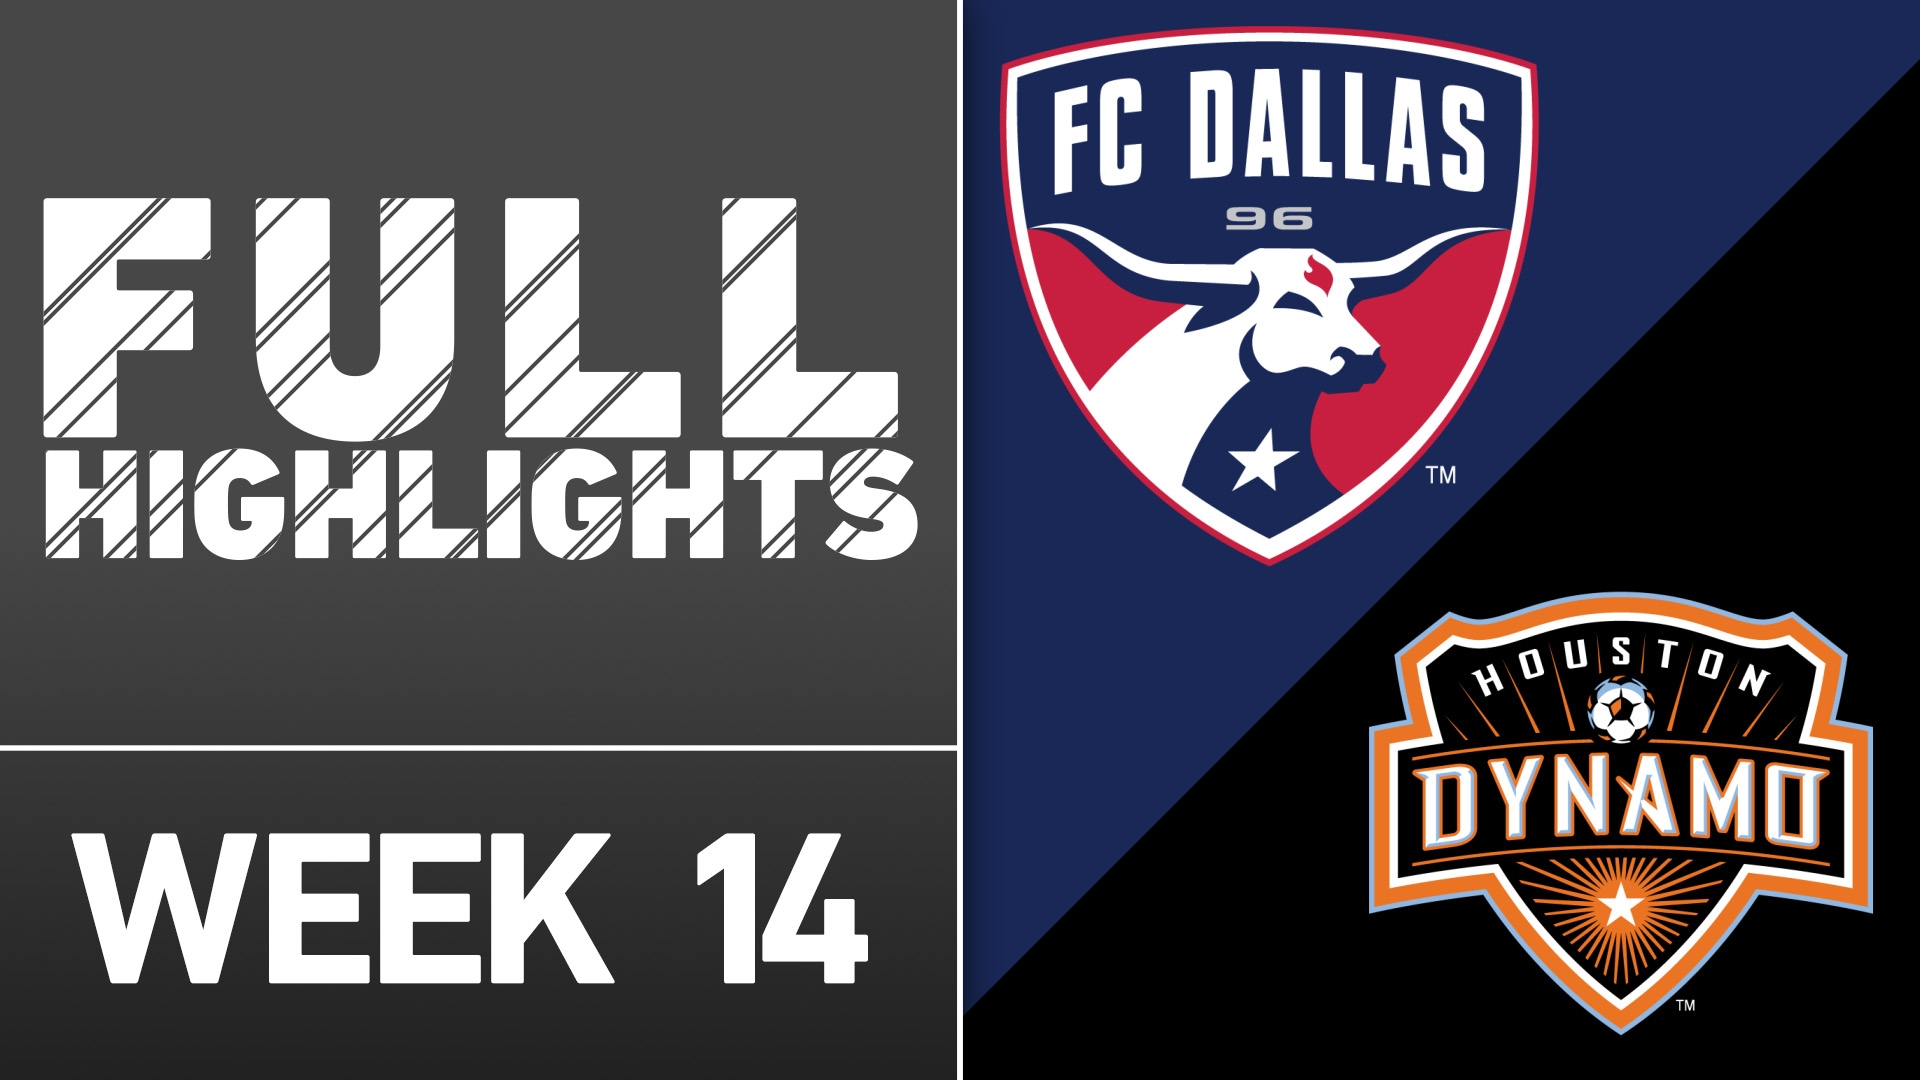 Video via MLS: FC Dallas 1-1 Houston